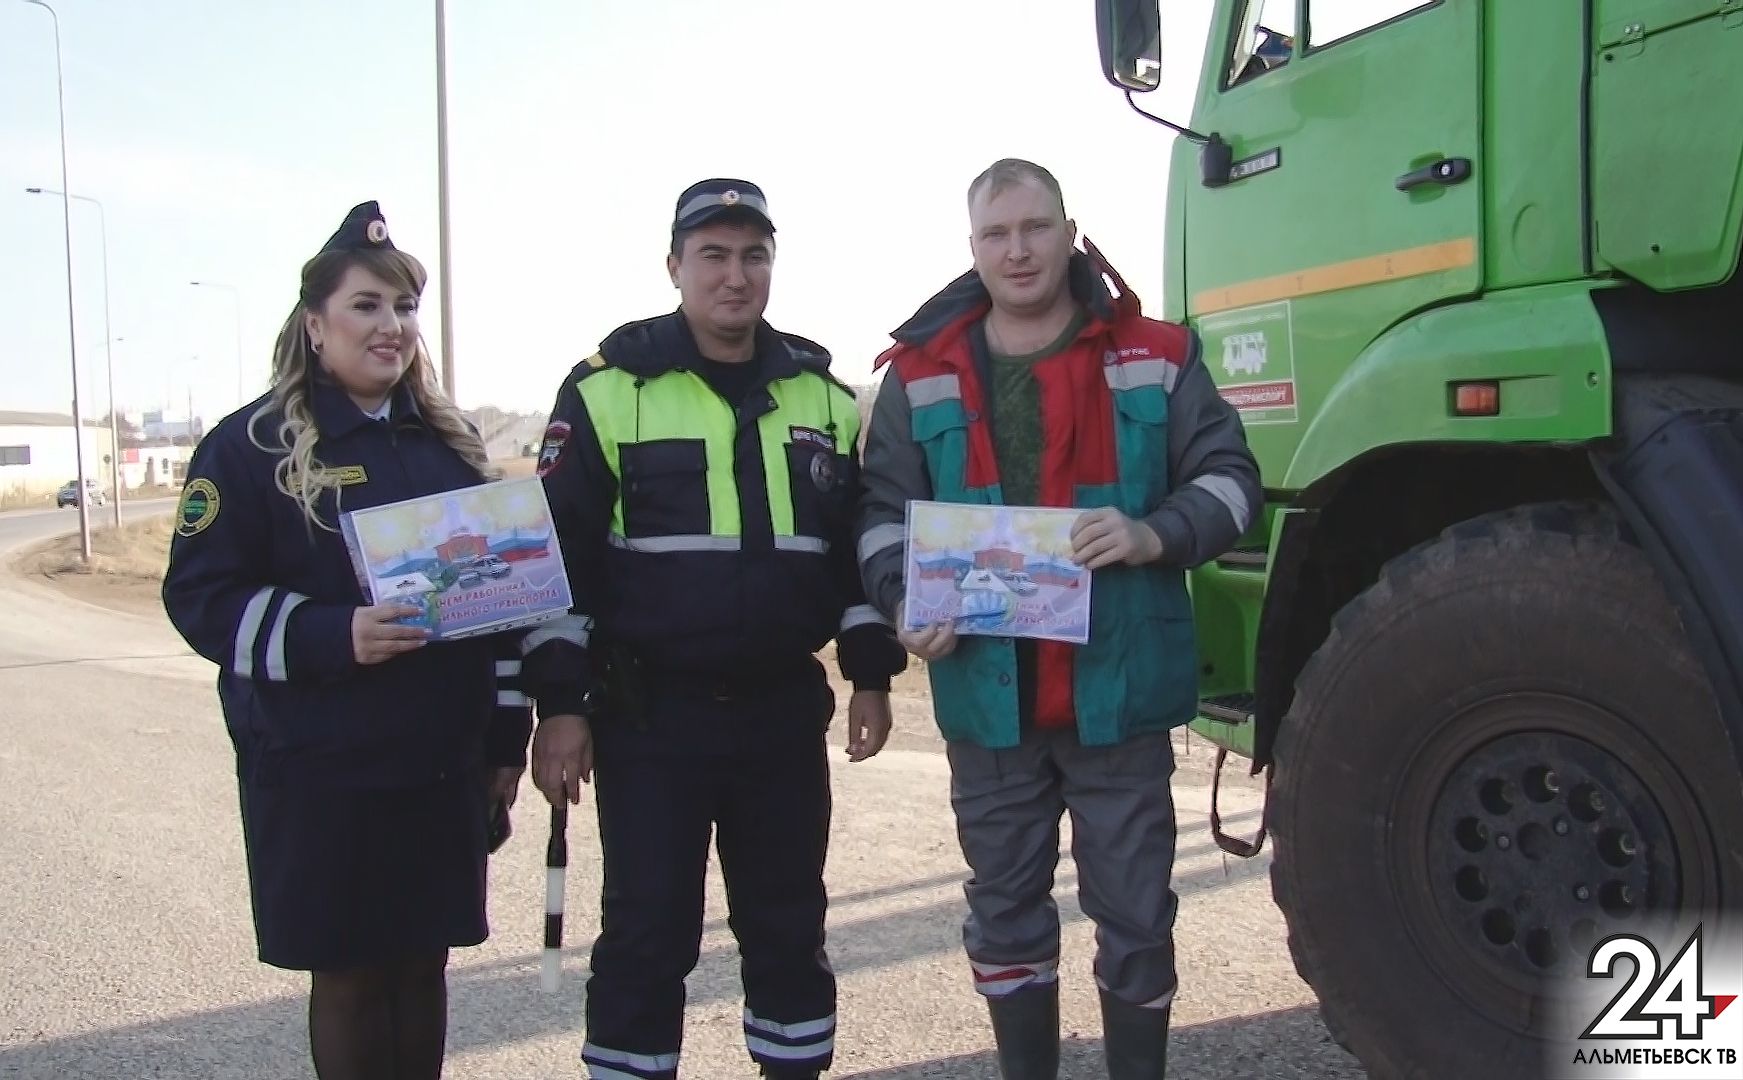 Праздник тех, кто за рулем: инспекторы дарили подарки водителям в Альметьевске